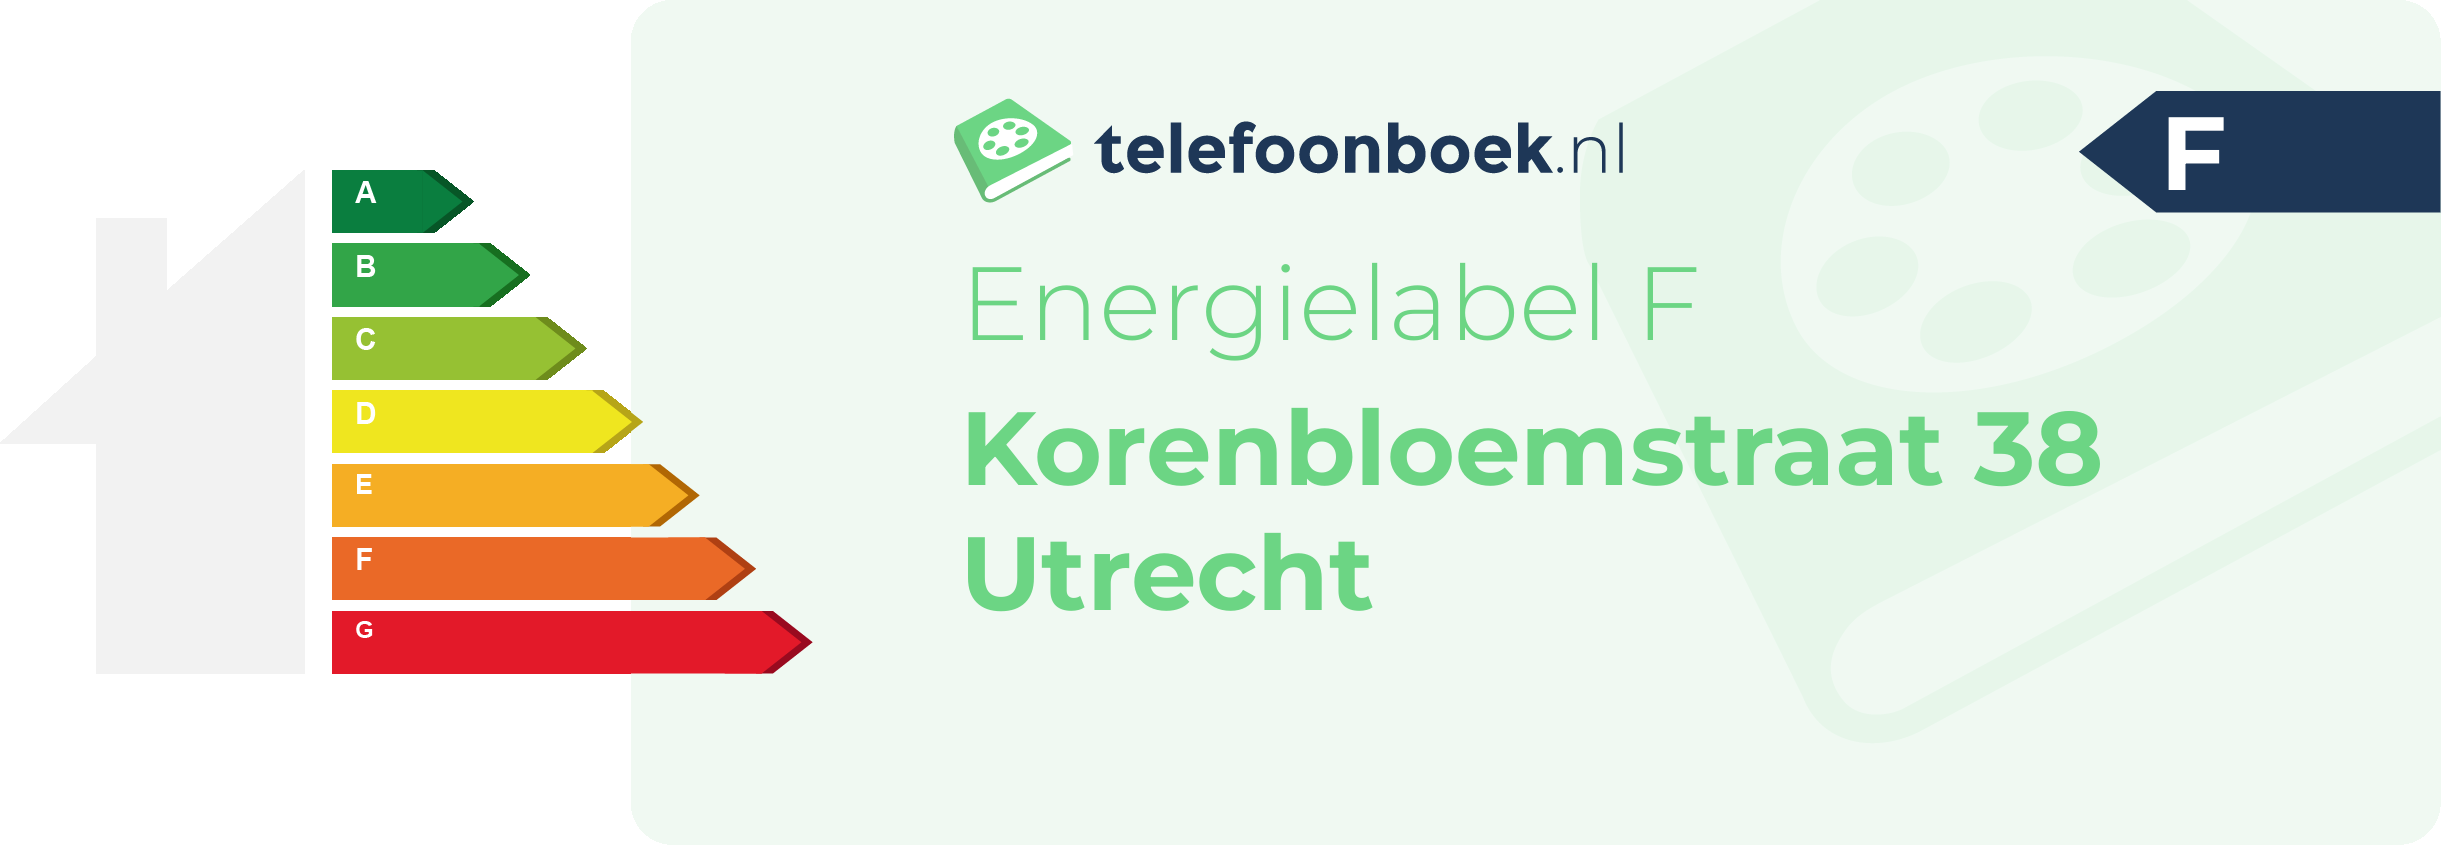 Energielabel Korenbloemstraat 38 Utrecht